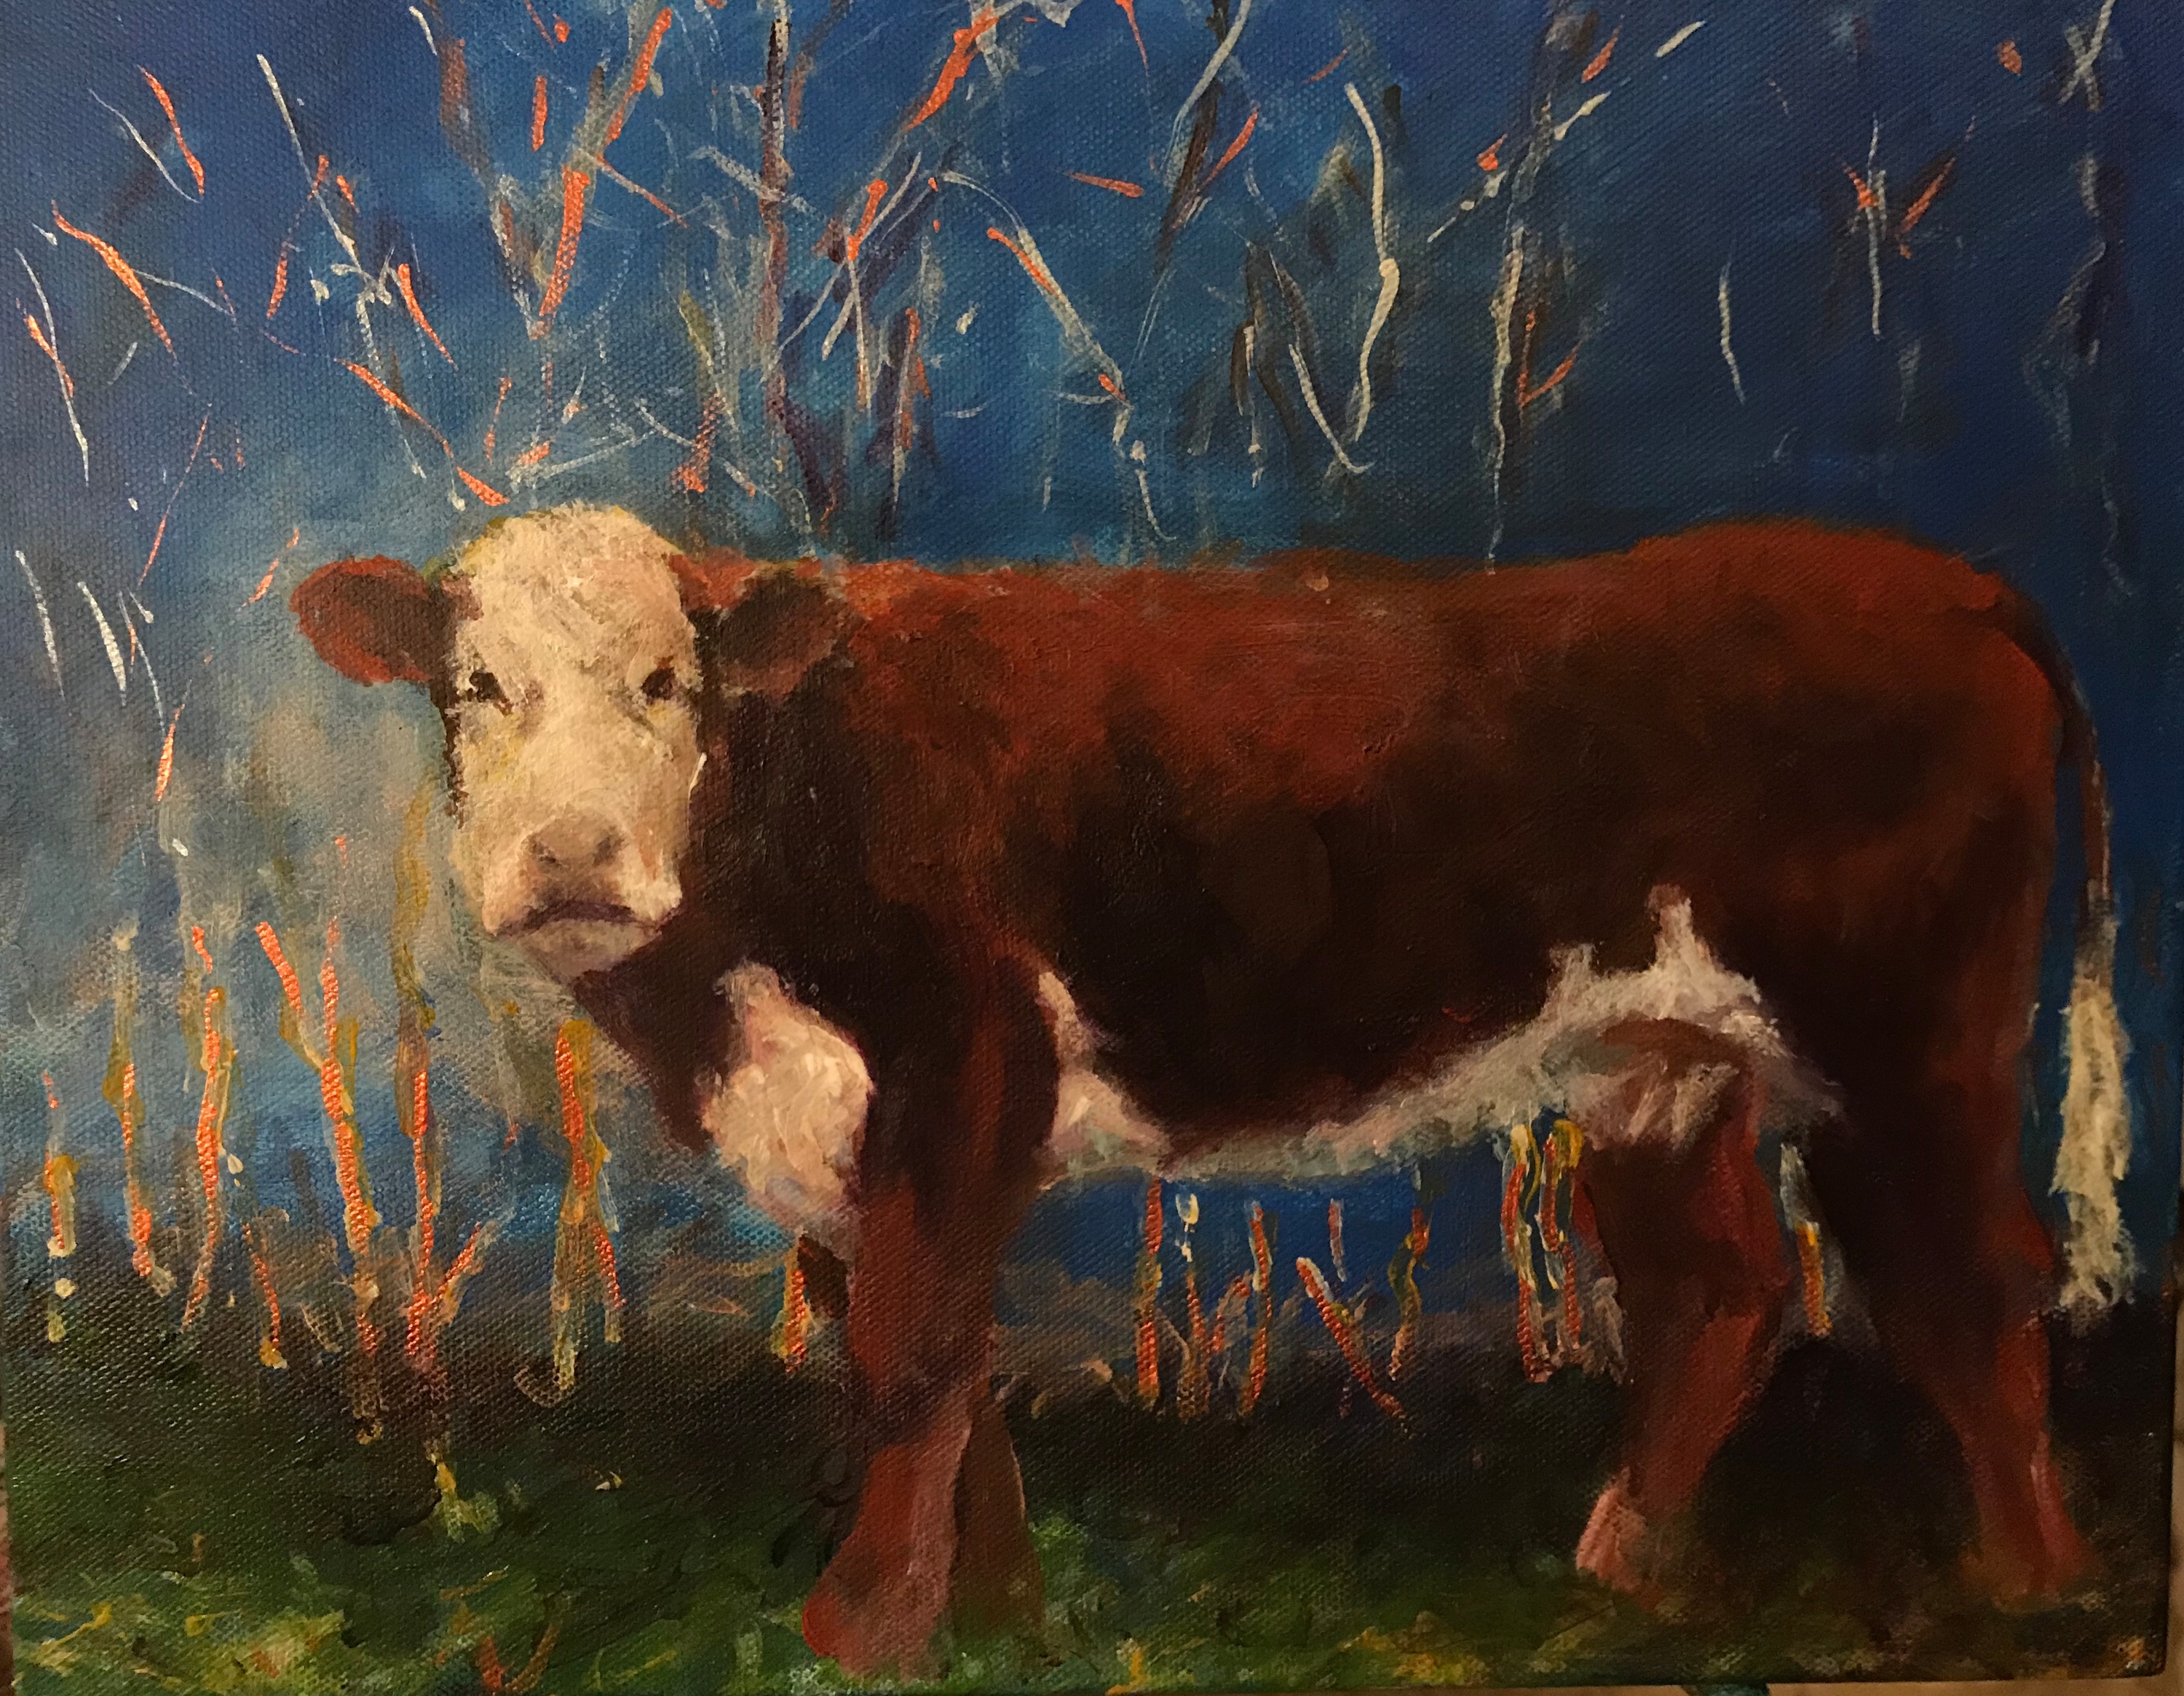 2020 3 20 have a cow acrylic on canvas 11 x 14 sinsyk